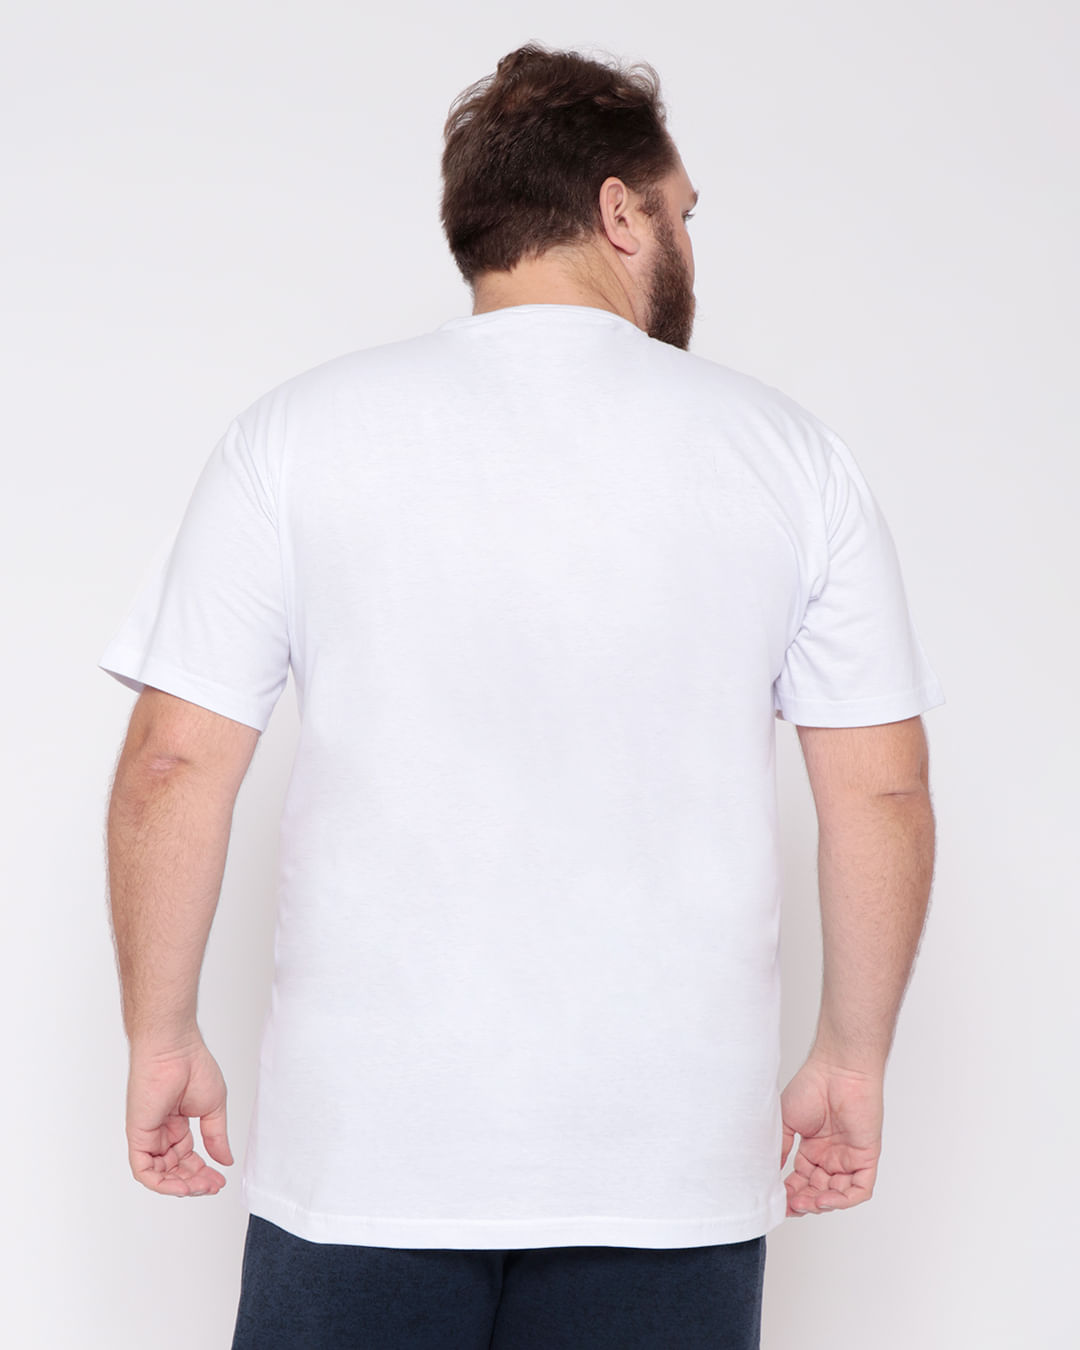 Camiseta-Plus-Size-Masculina-Original-da-Quebrada-Branca-